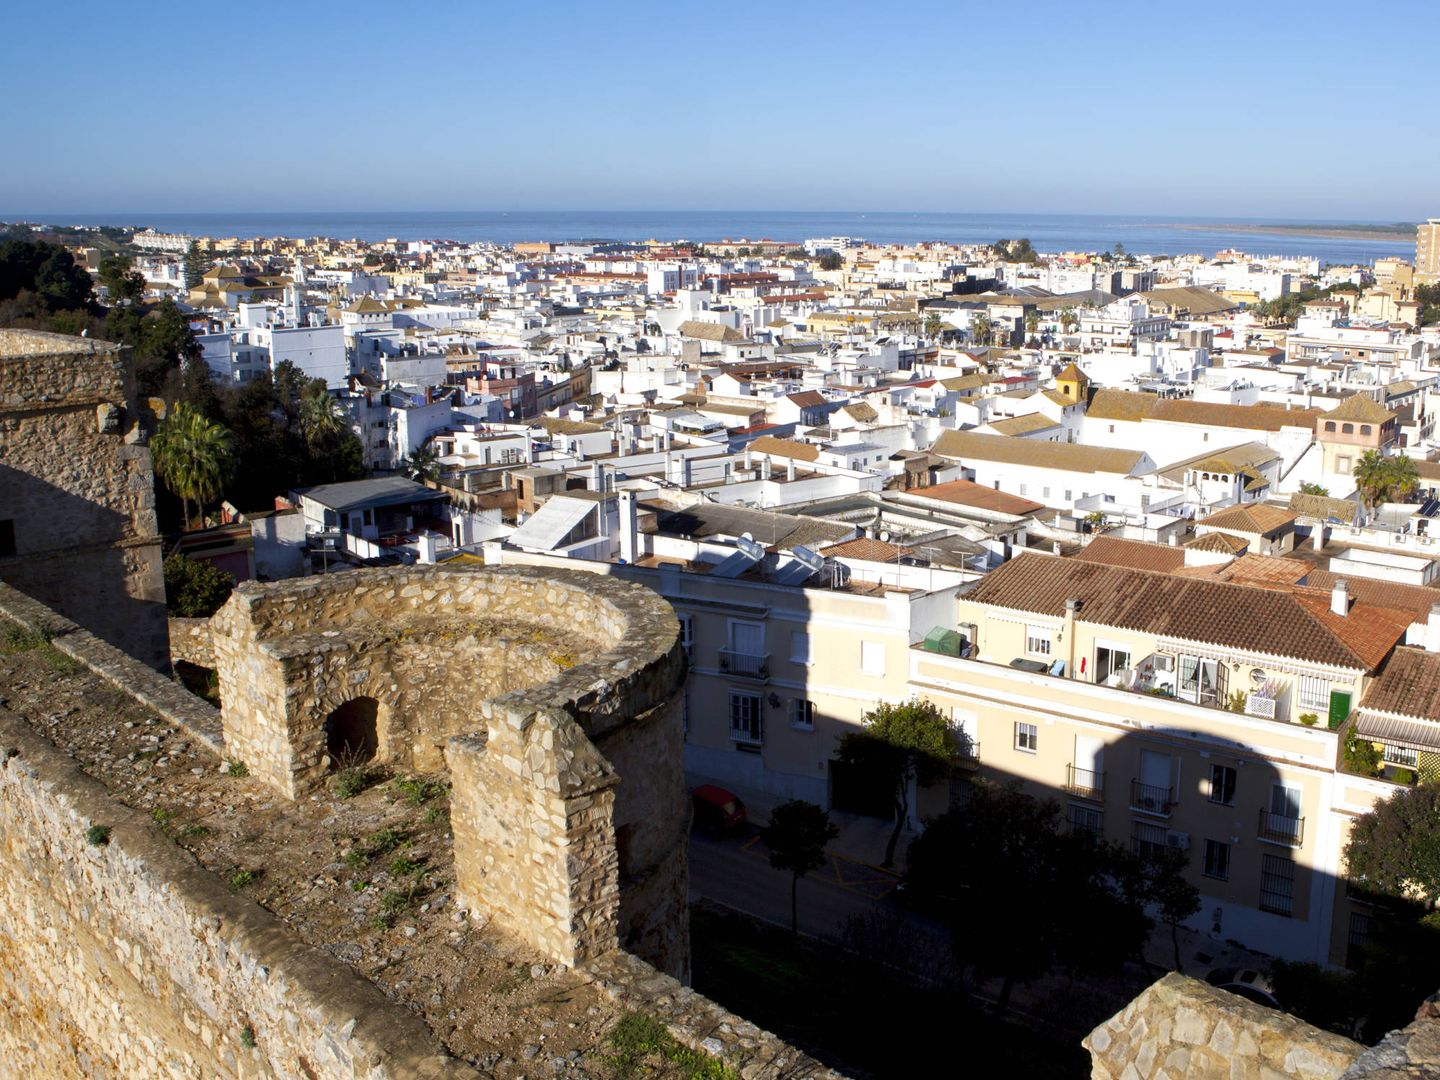 Vistas de Sanlúcar de Barrameda desde el Castillo de Santiago (Turismo Andaluz).